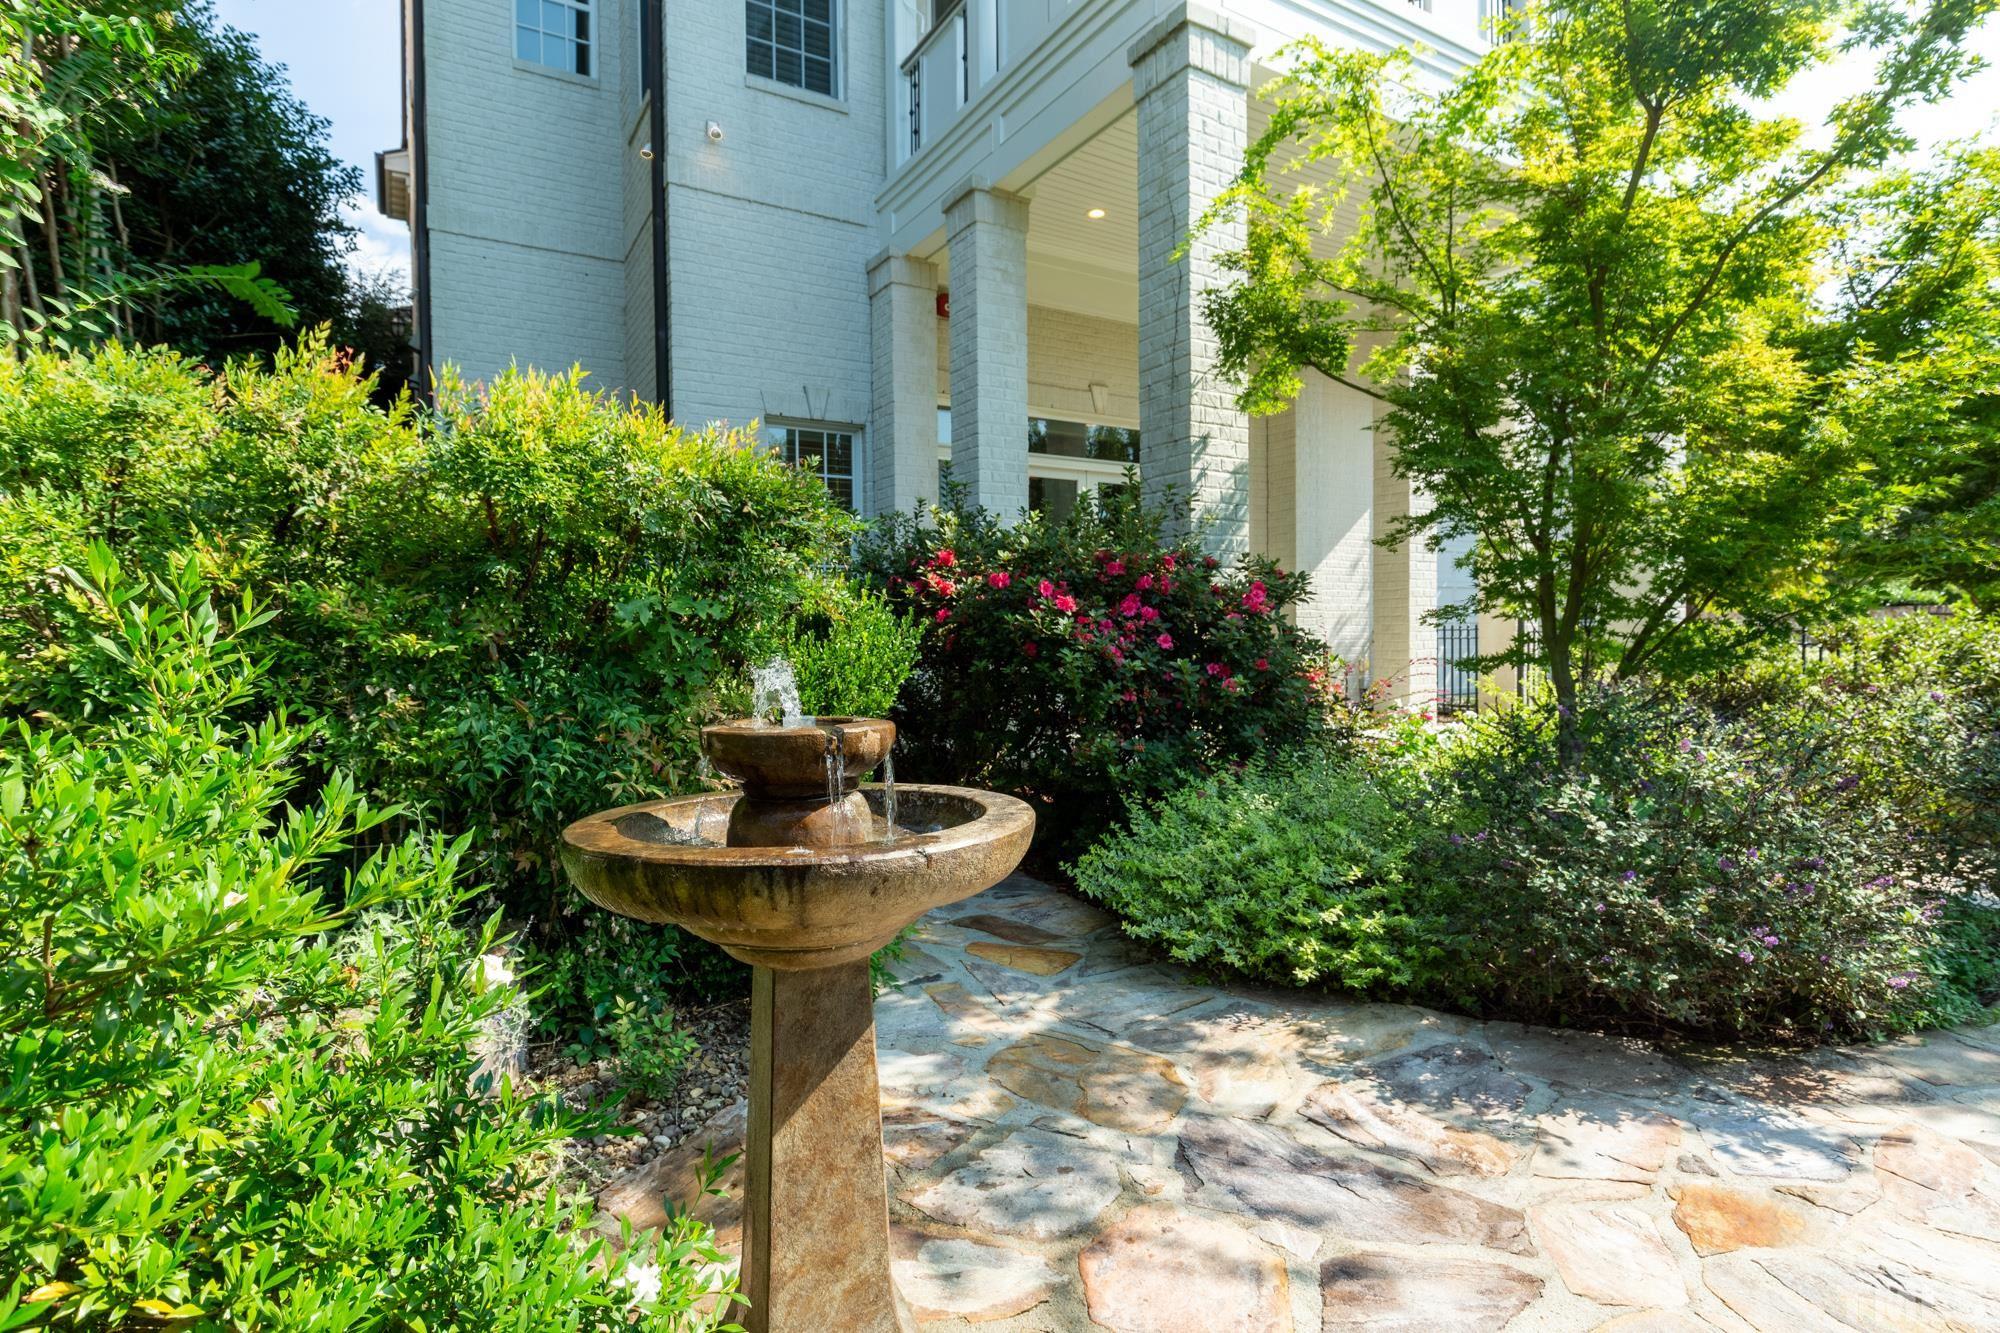 Courtyard/Garden/Fountain